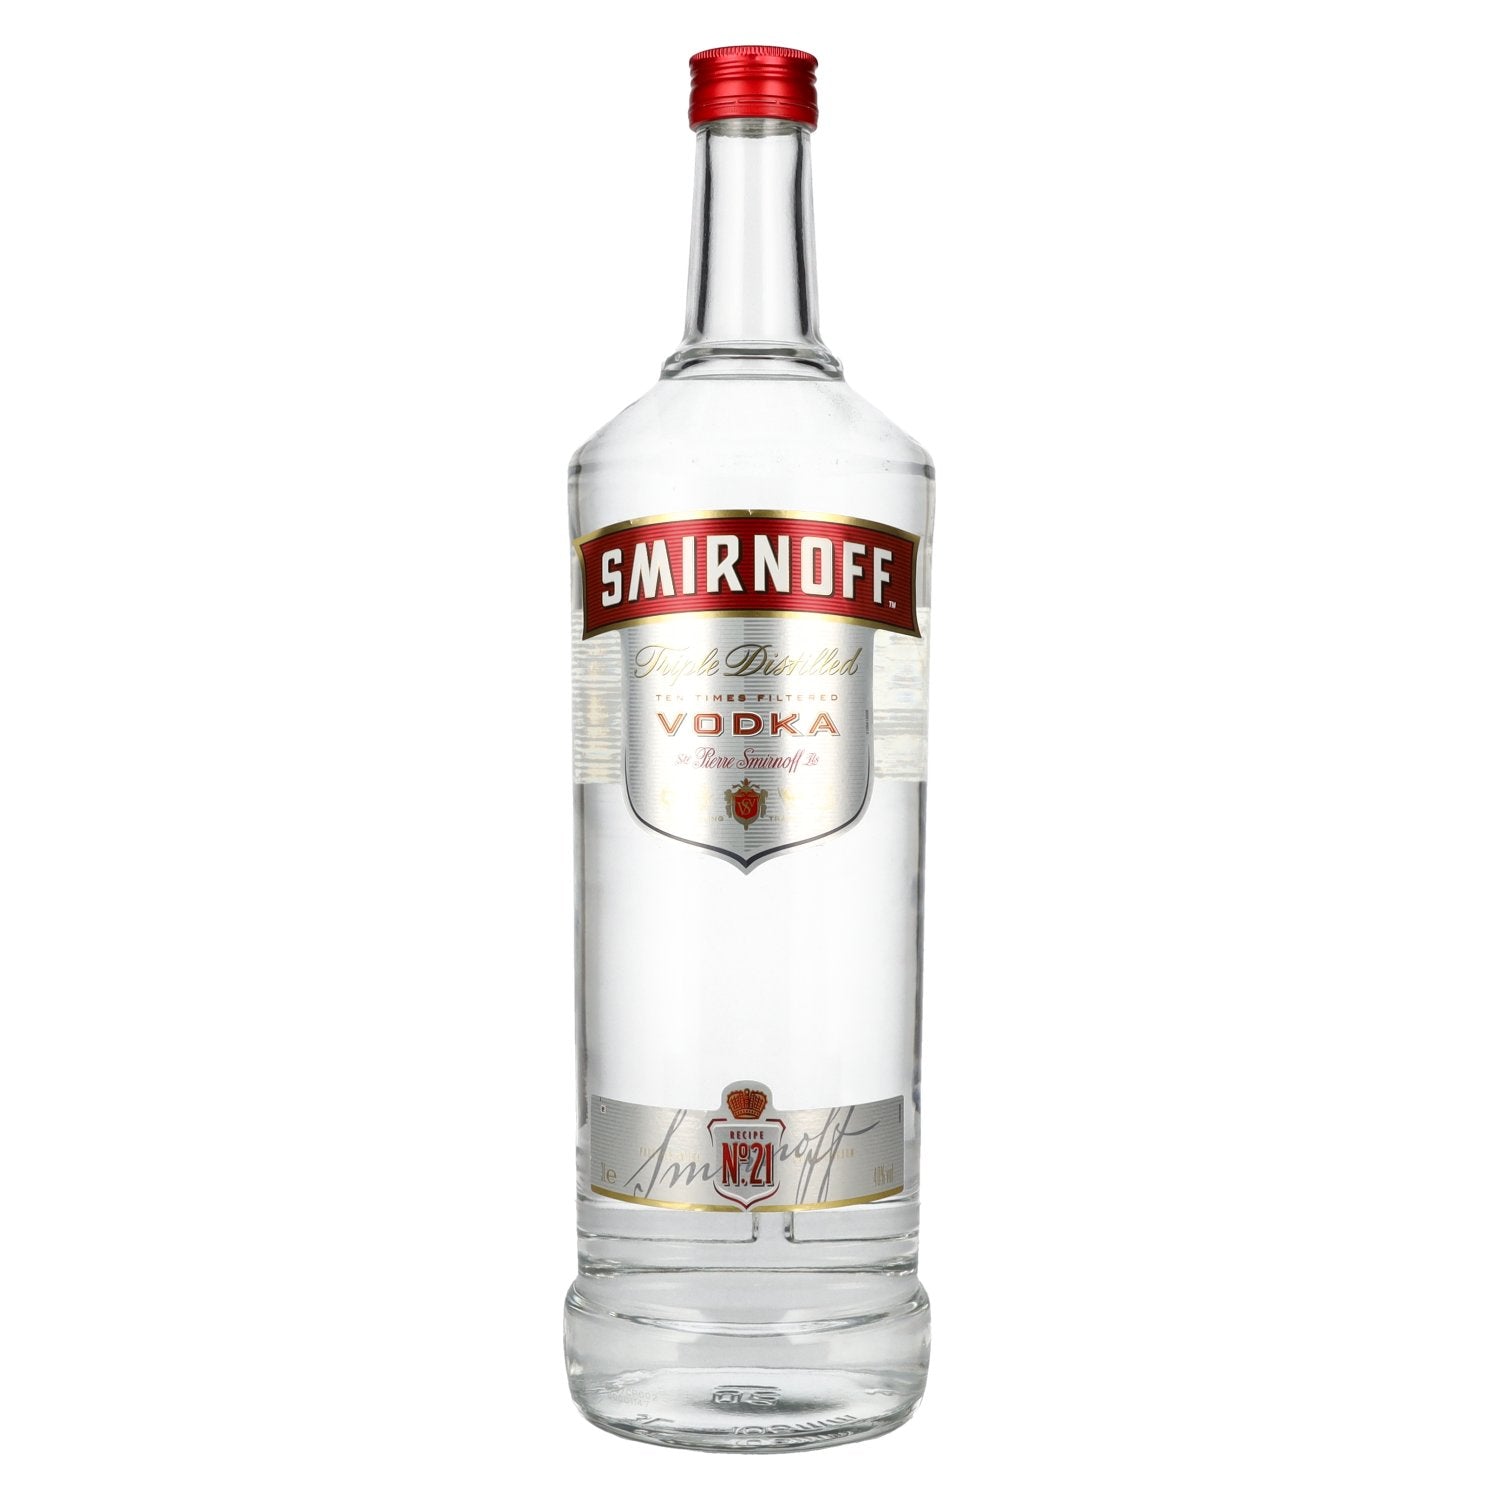 Smirnoff No. 21 Vodka 40% Vol. 3l